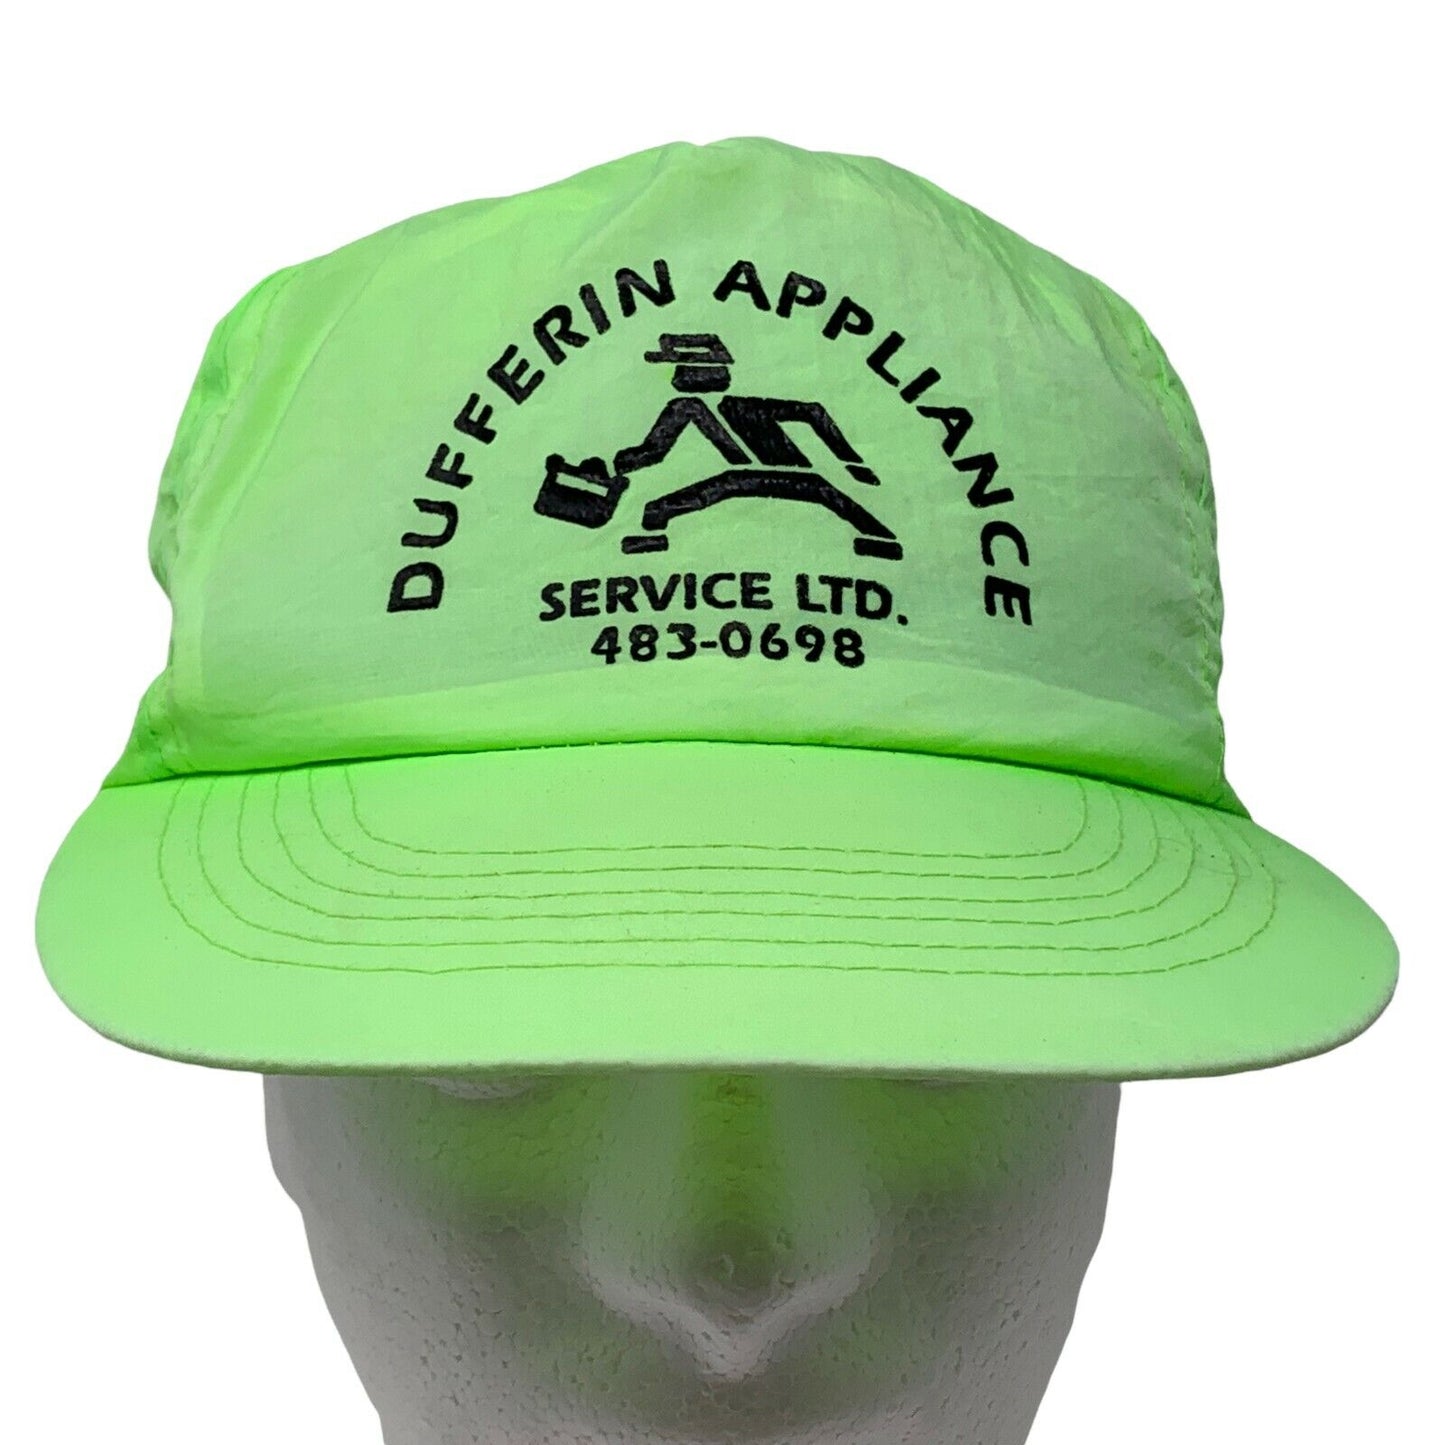 Dufferin Appliance Service Inc Snapback Hat Vintage 90s Neon Green Baseball Cap